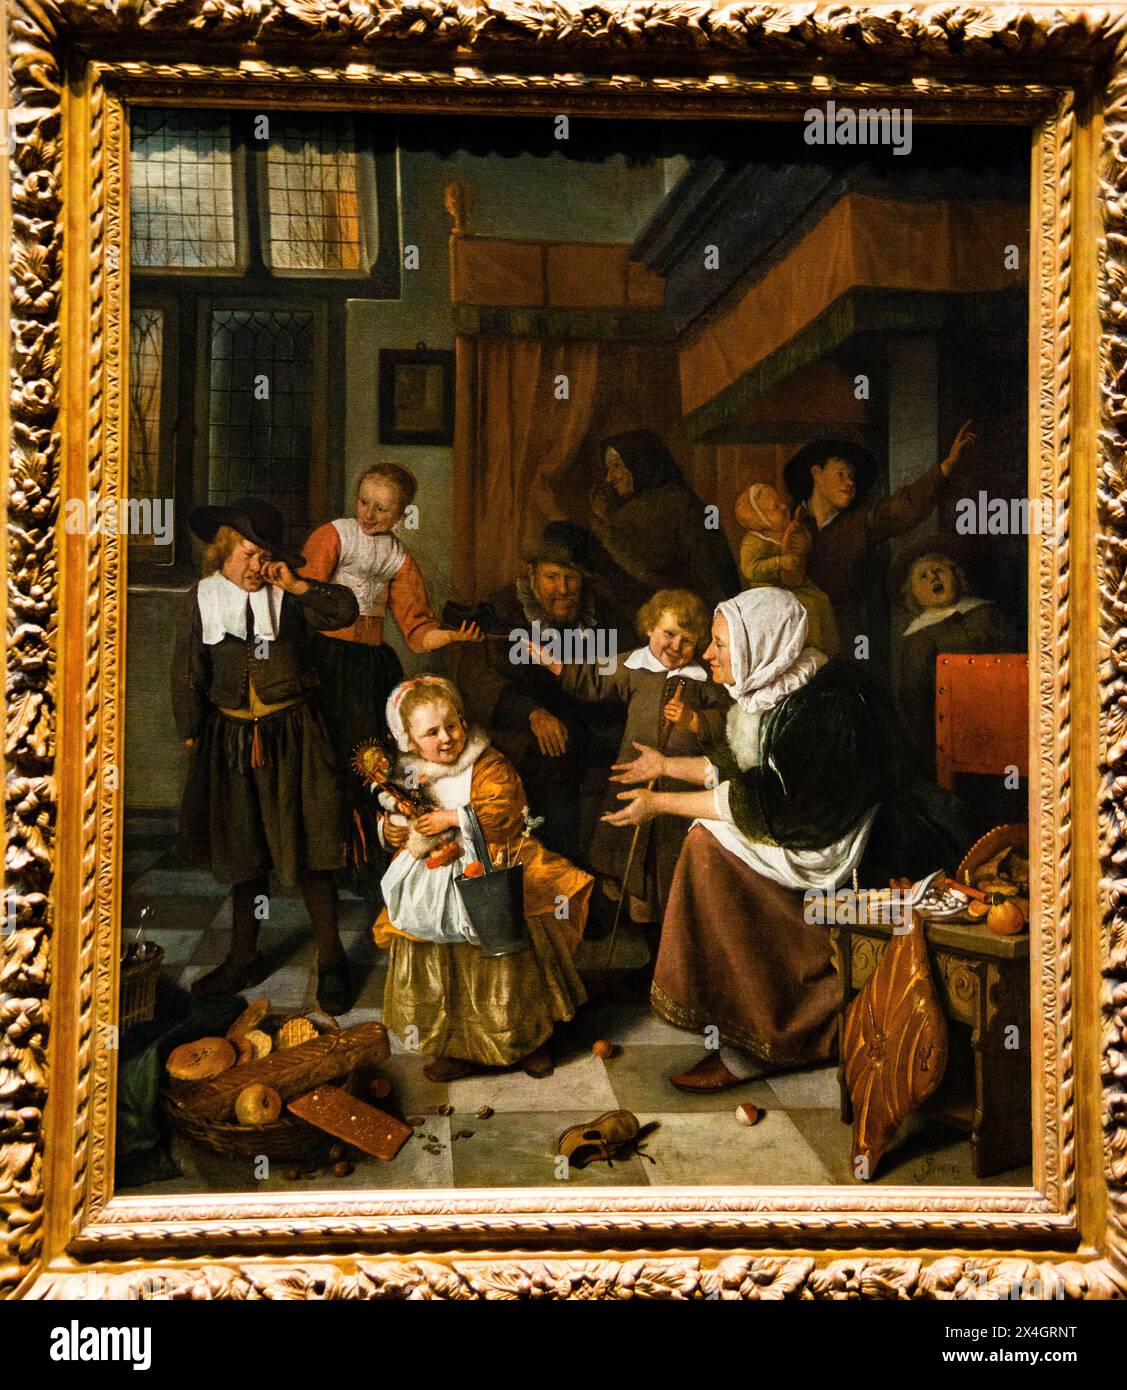 La fête de Saint Nicolas, Jan Steen, Rijksmuseum, Amsterdam, pays-Bas. Banque D'Images